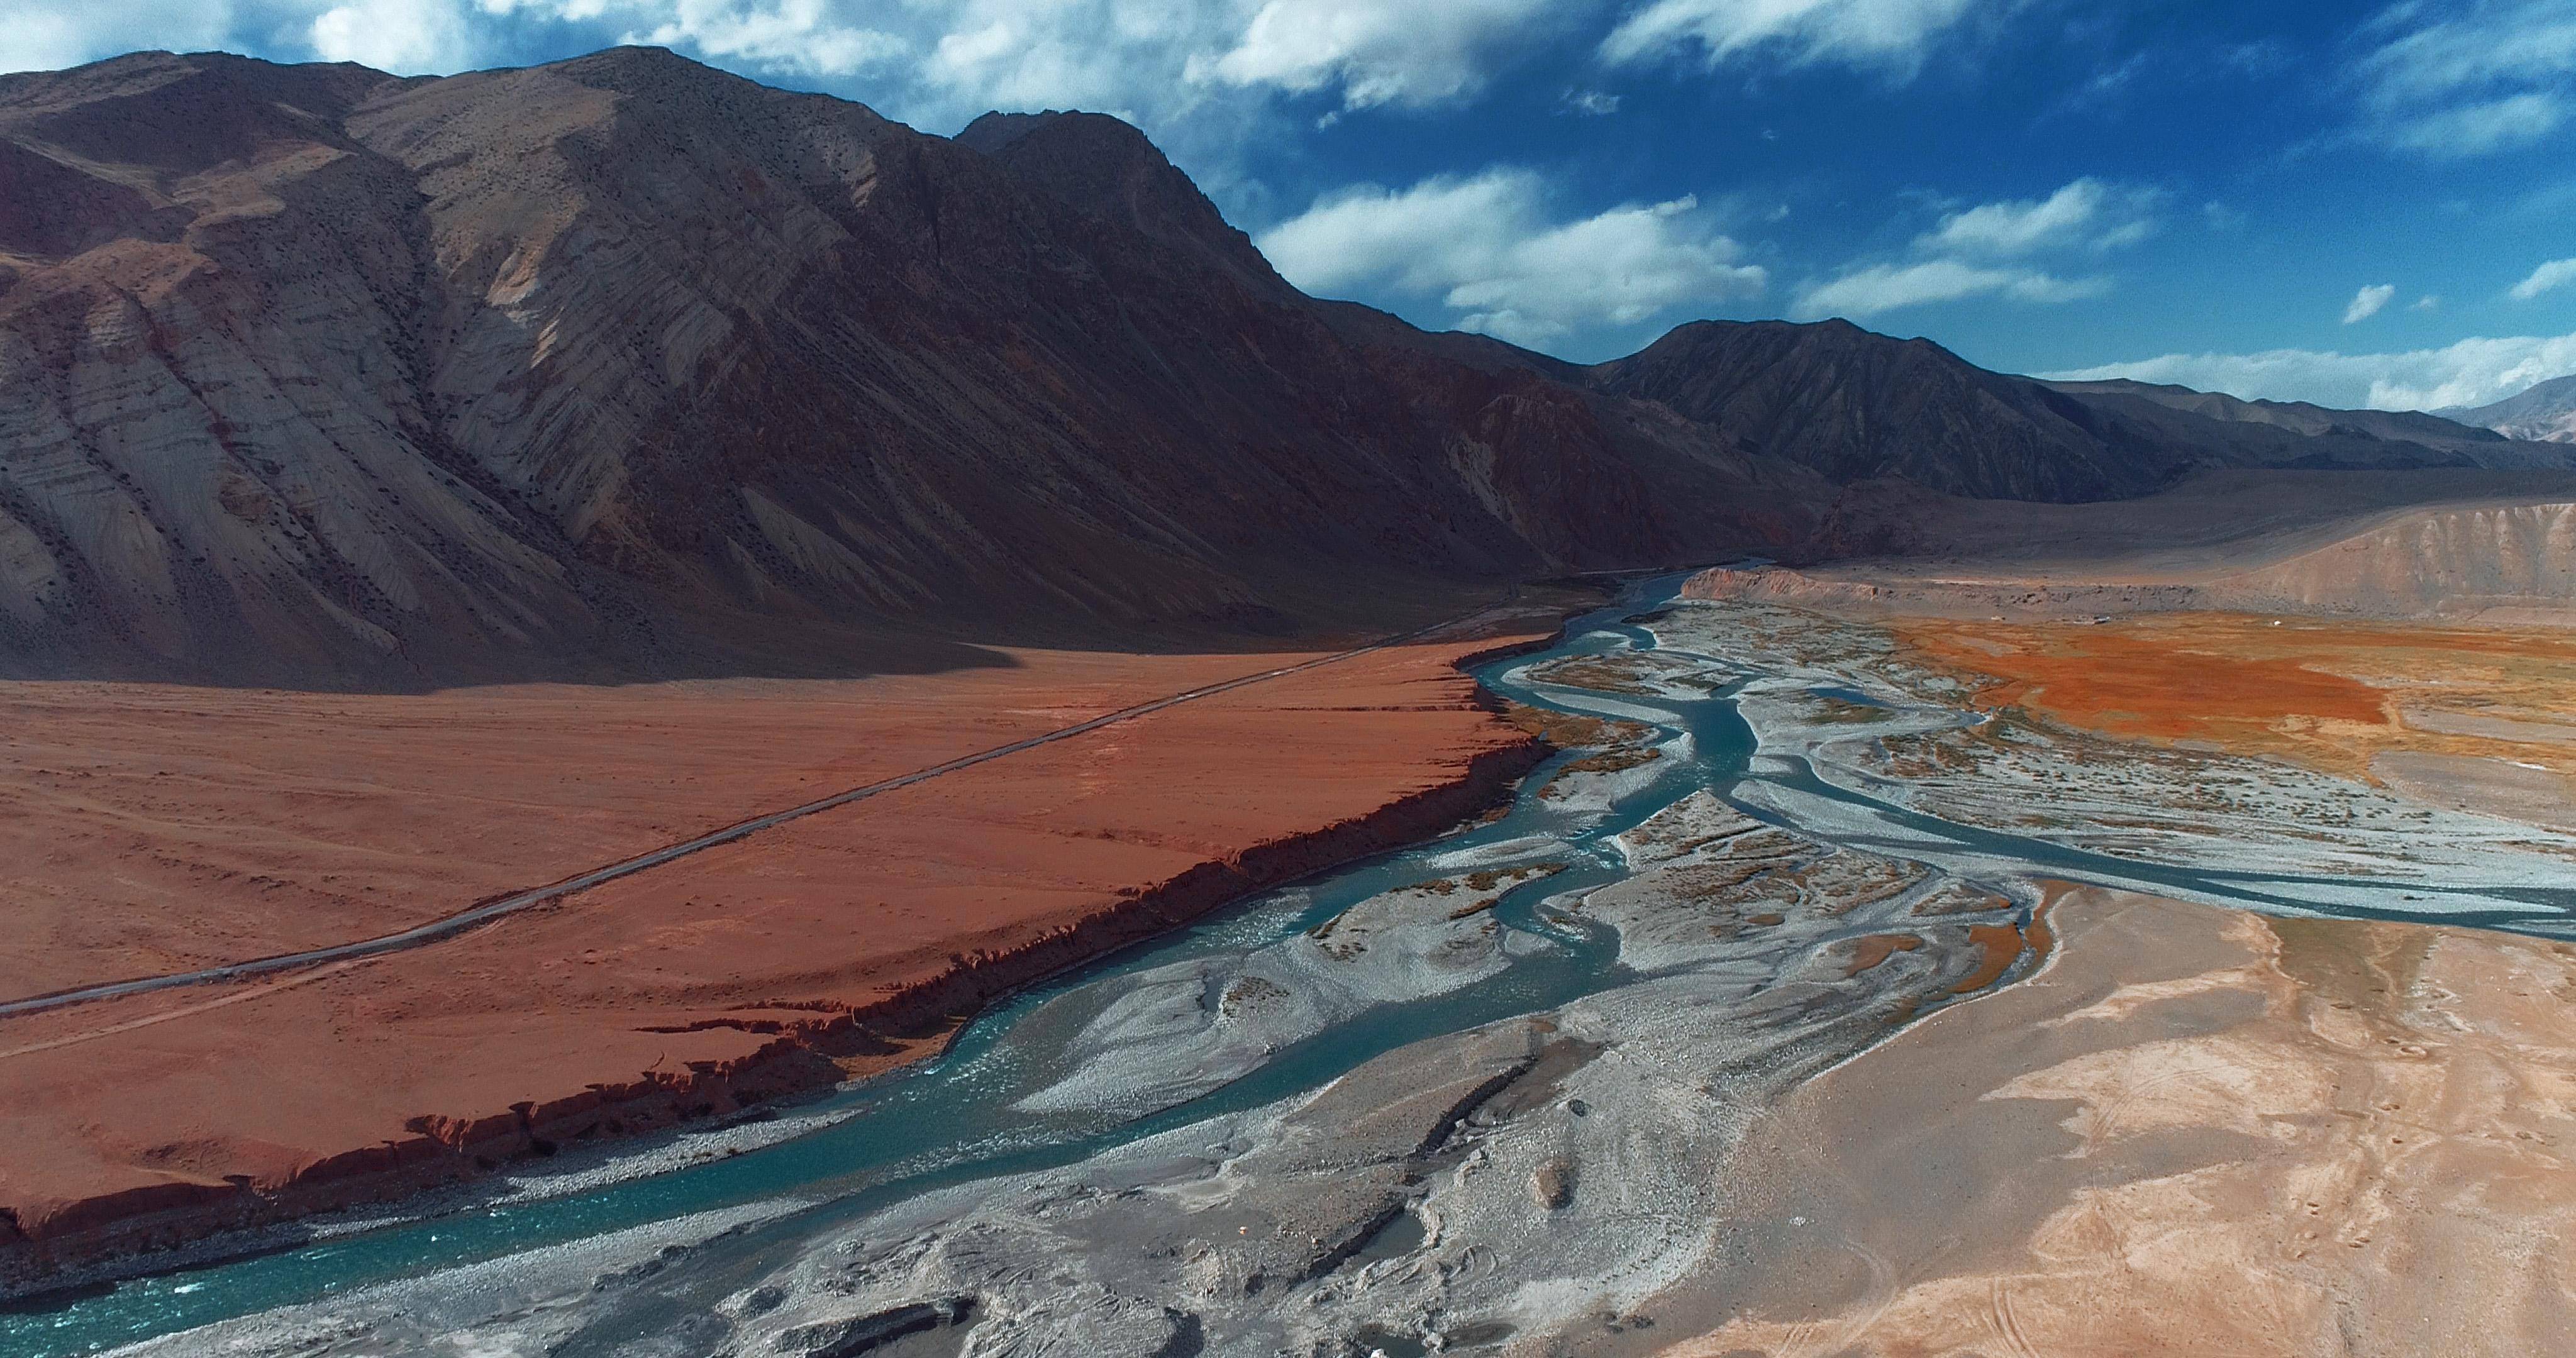 西起阿姆河上游的喷赤河及其支流帕米尔河,东接我国新疆塔什库尔干